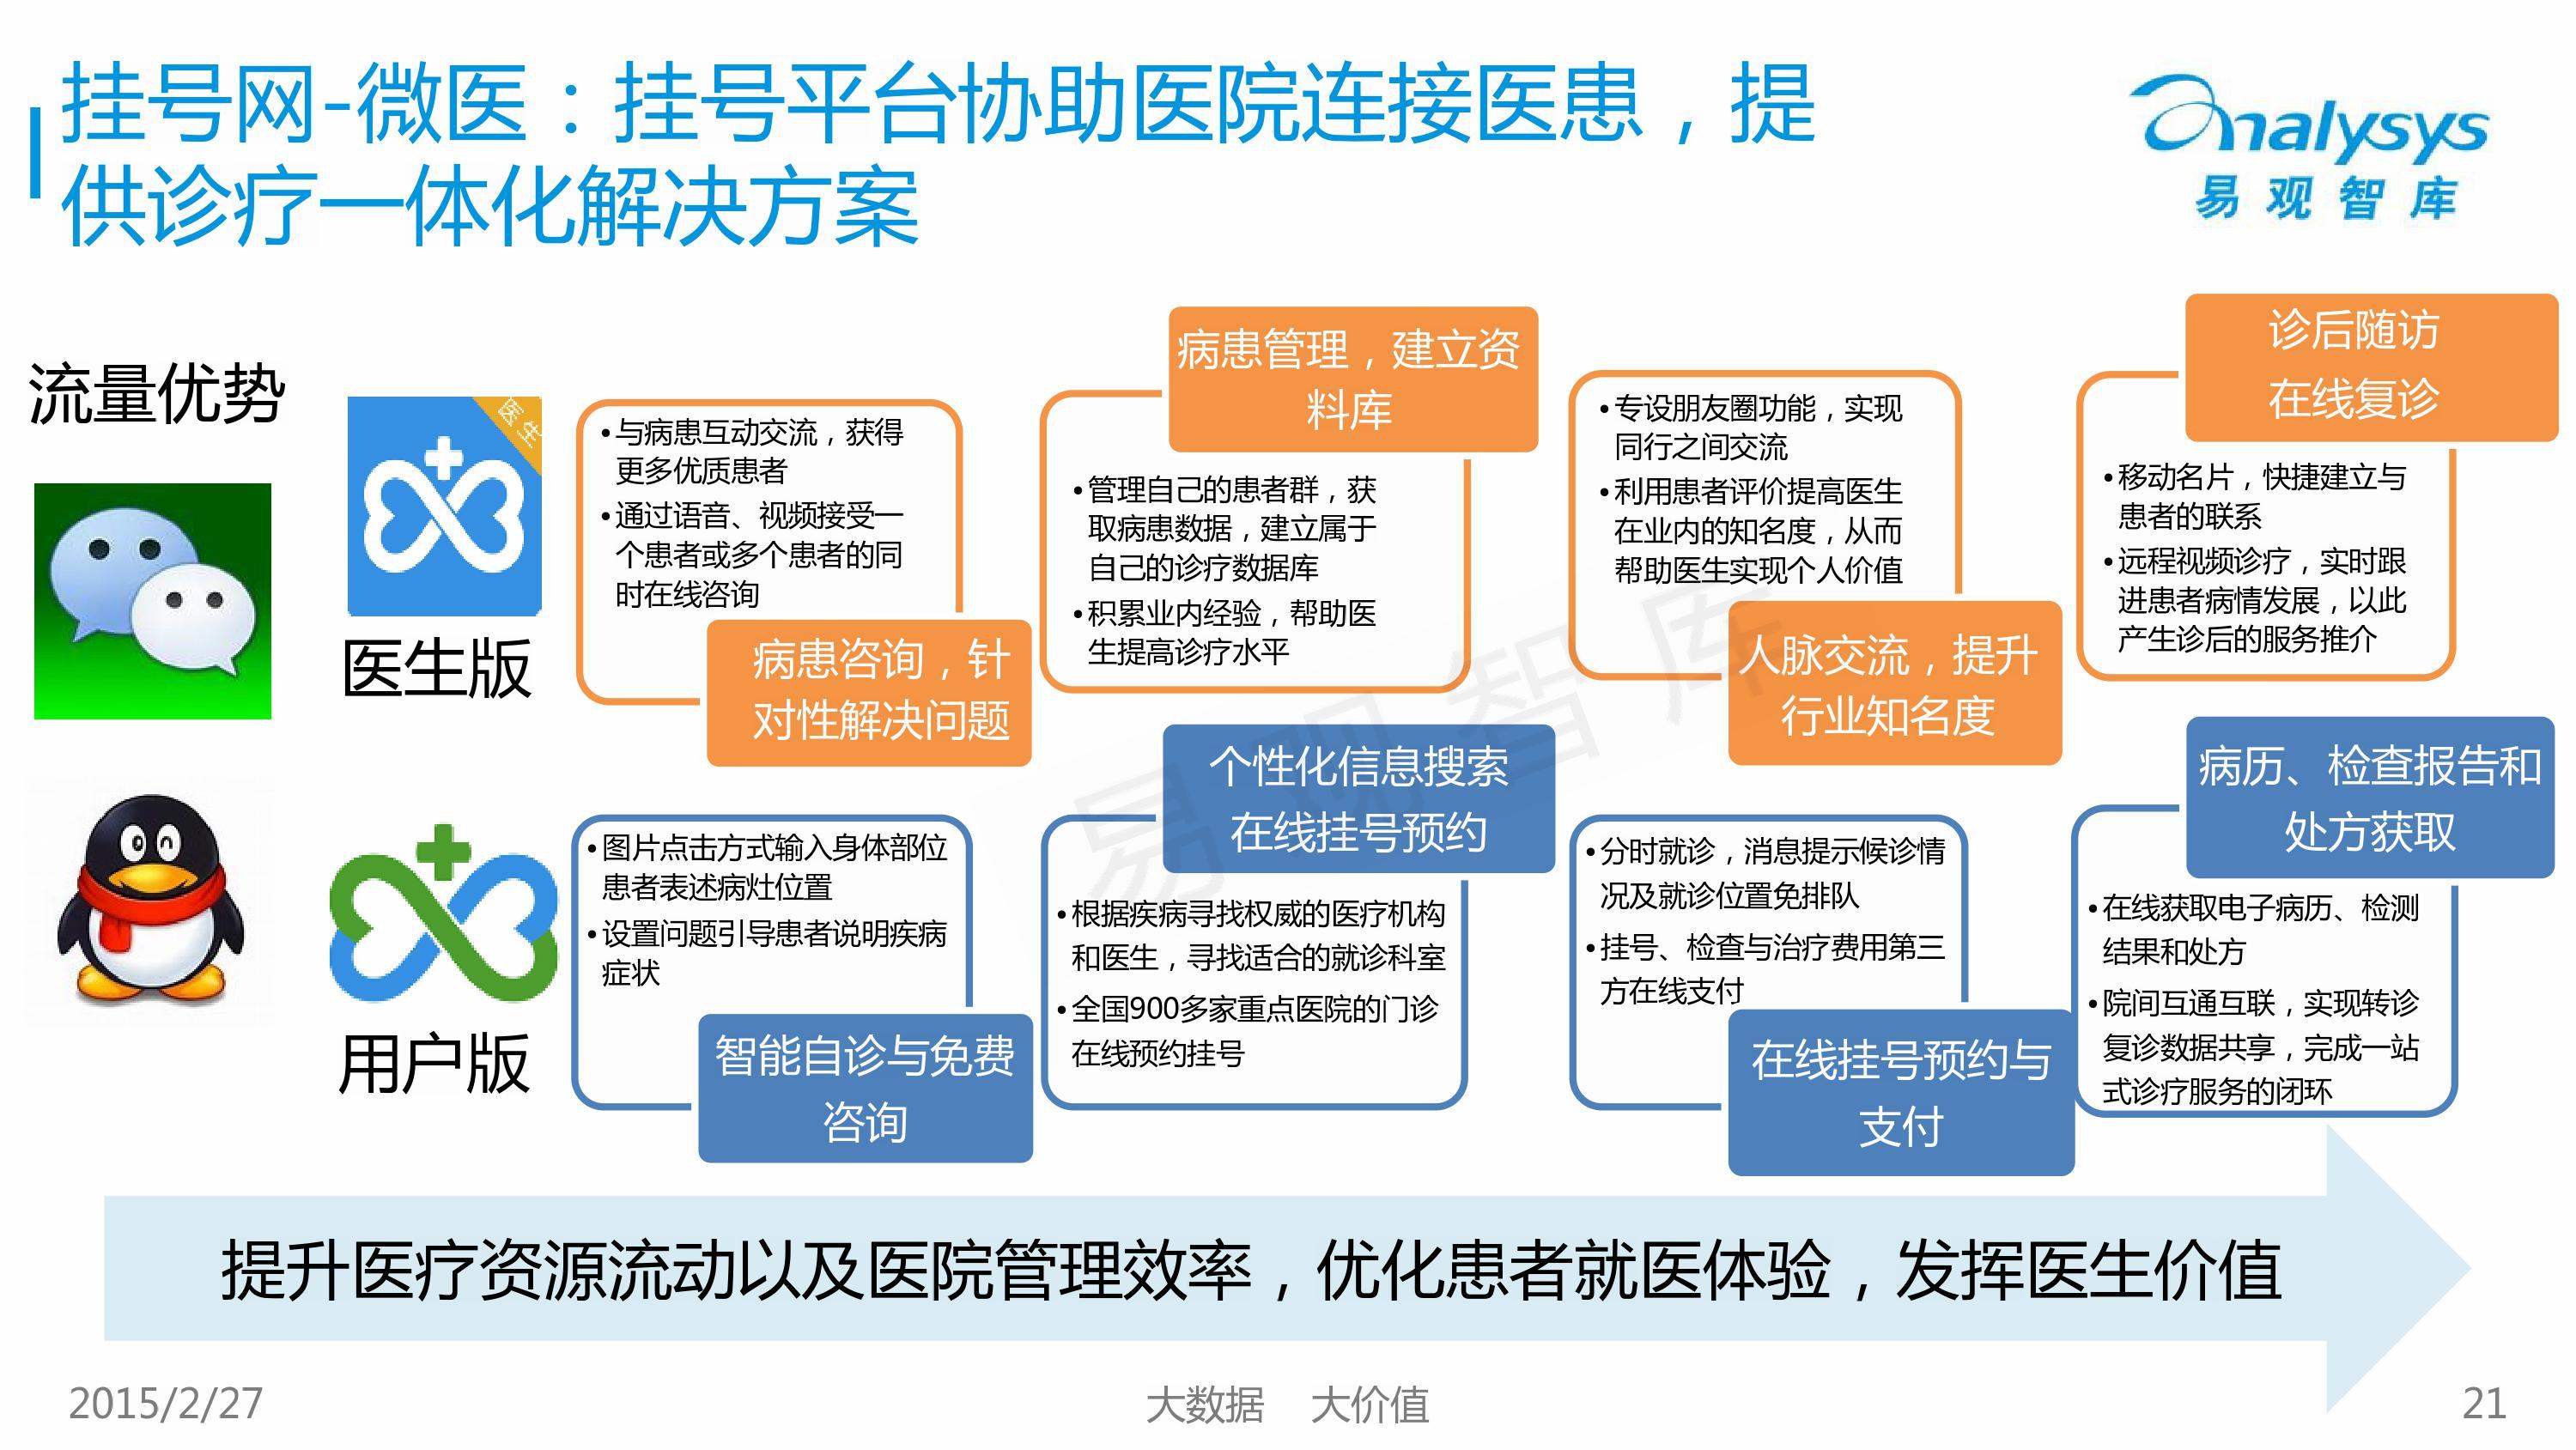 【完整ppt】2015中国移动医疗市场专题研究报告